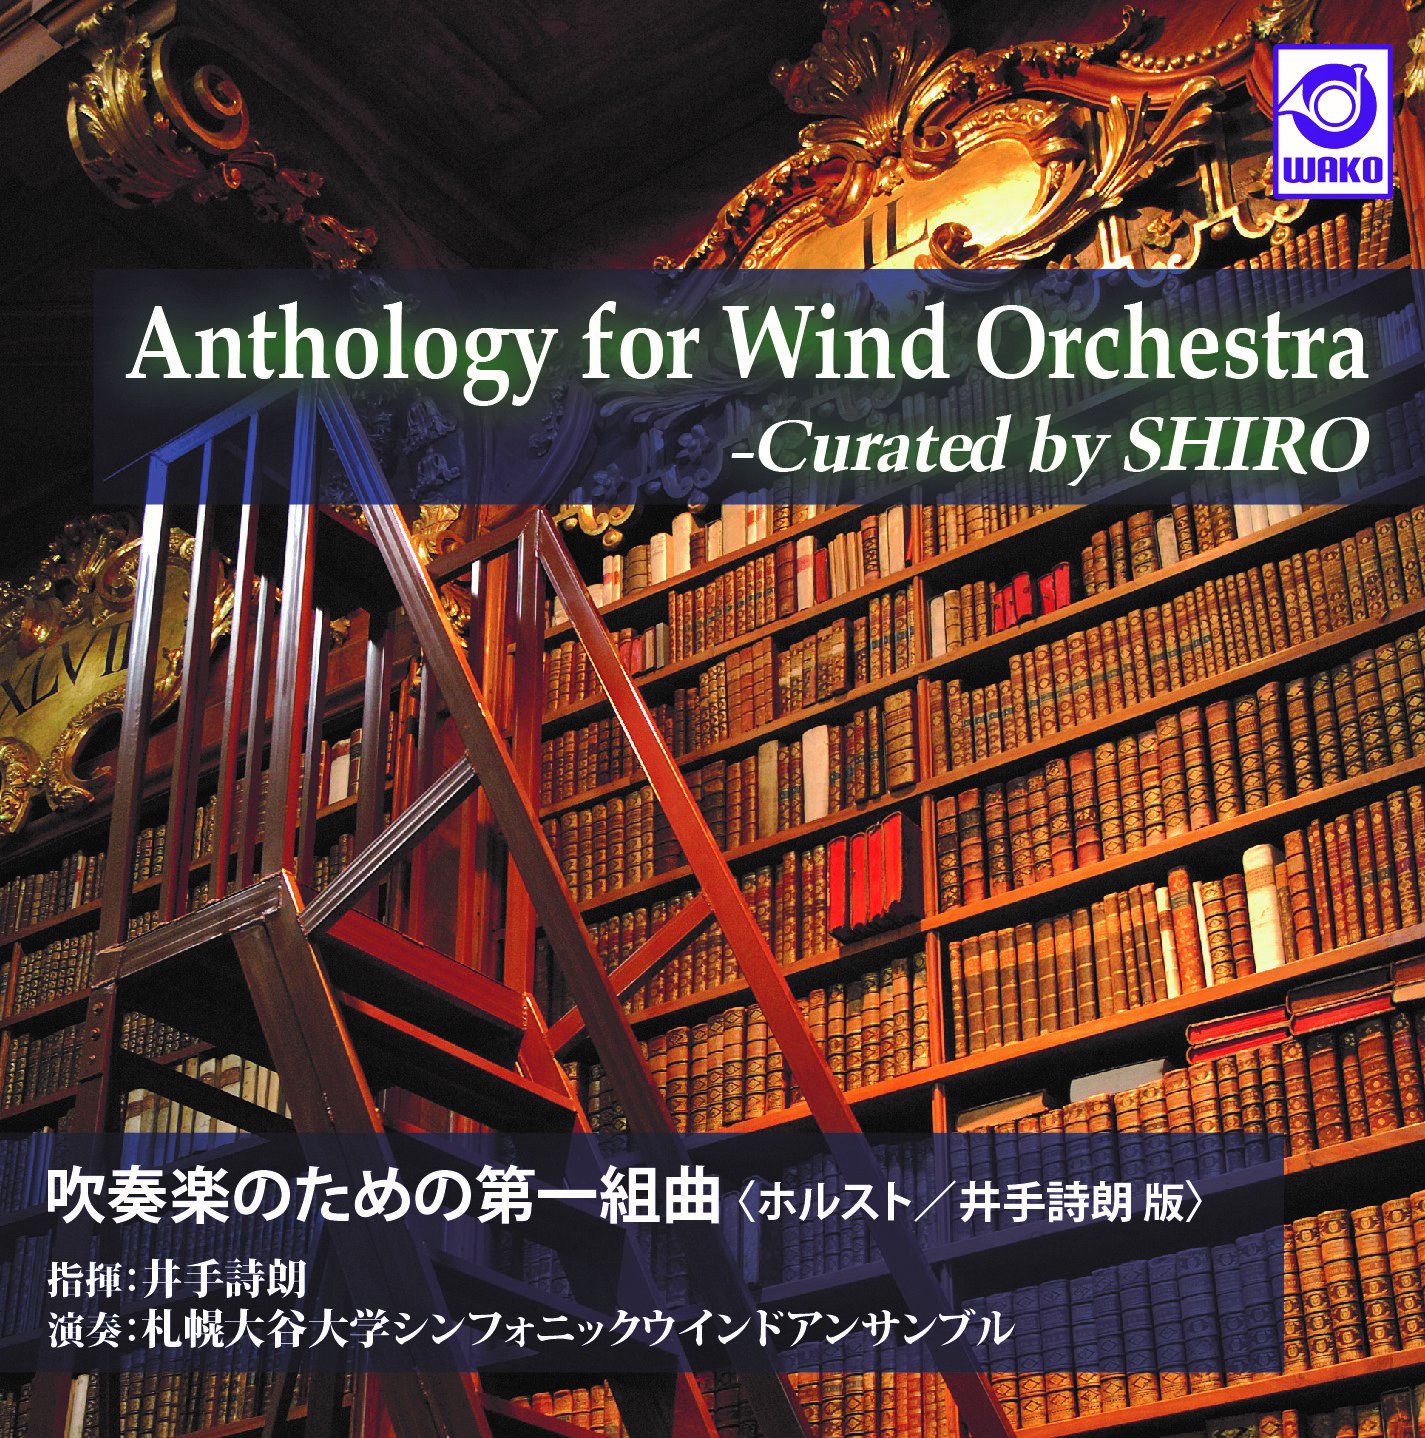 吹奏楽CD】Anthology for Wind Orchestra - Curated by SHIRO 吹奏楽 のための第一組曲〈ホルスト/井手詩朗版〉